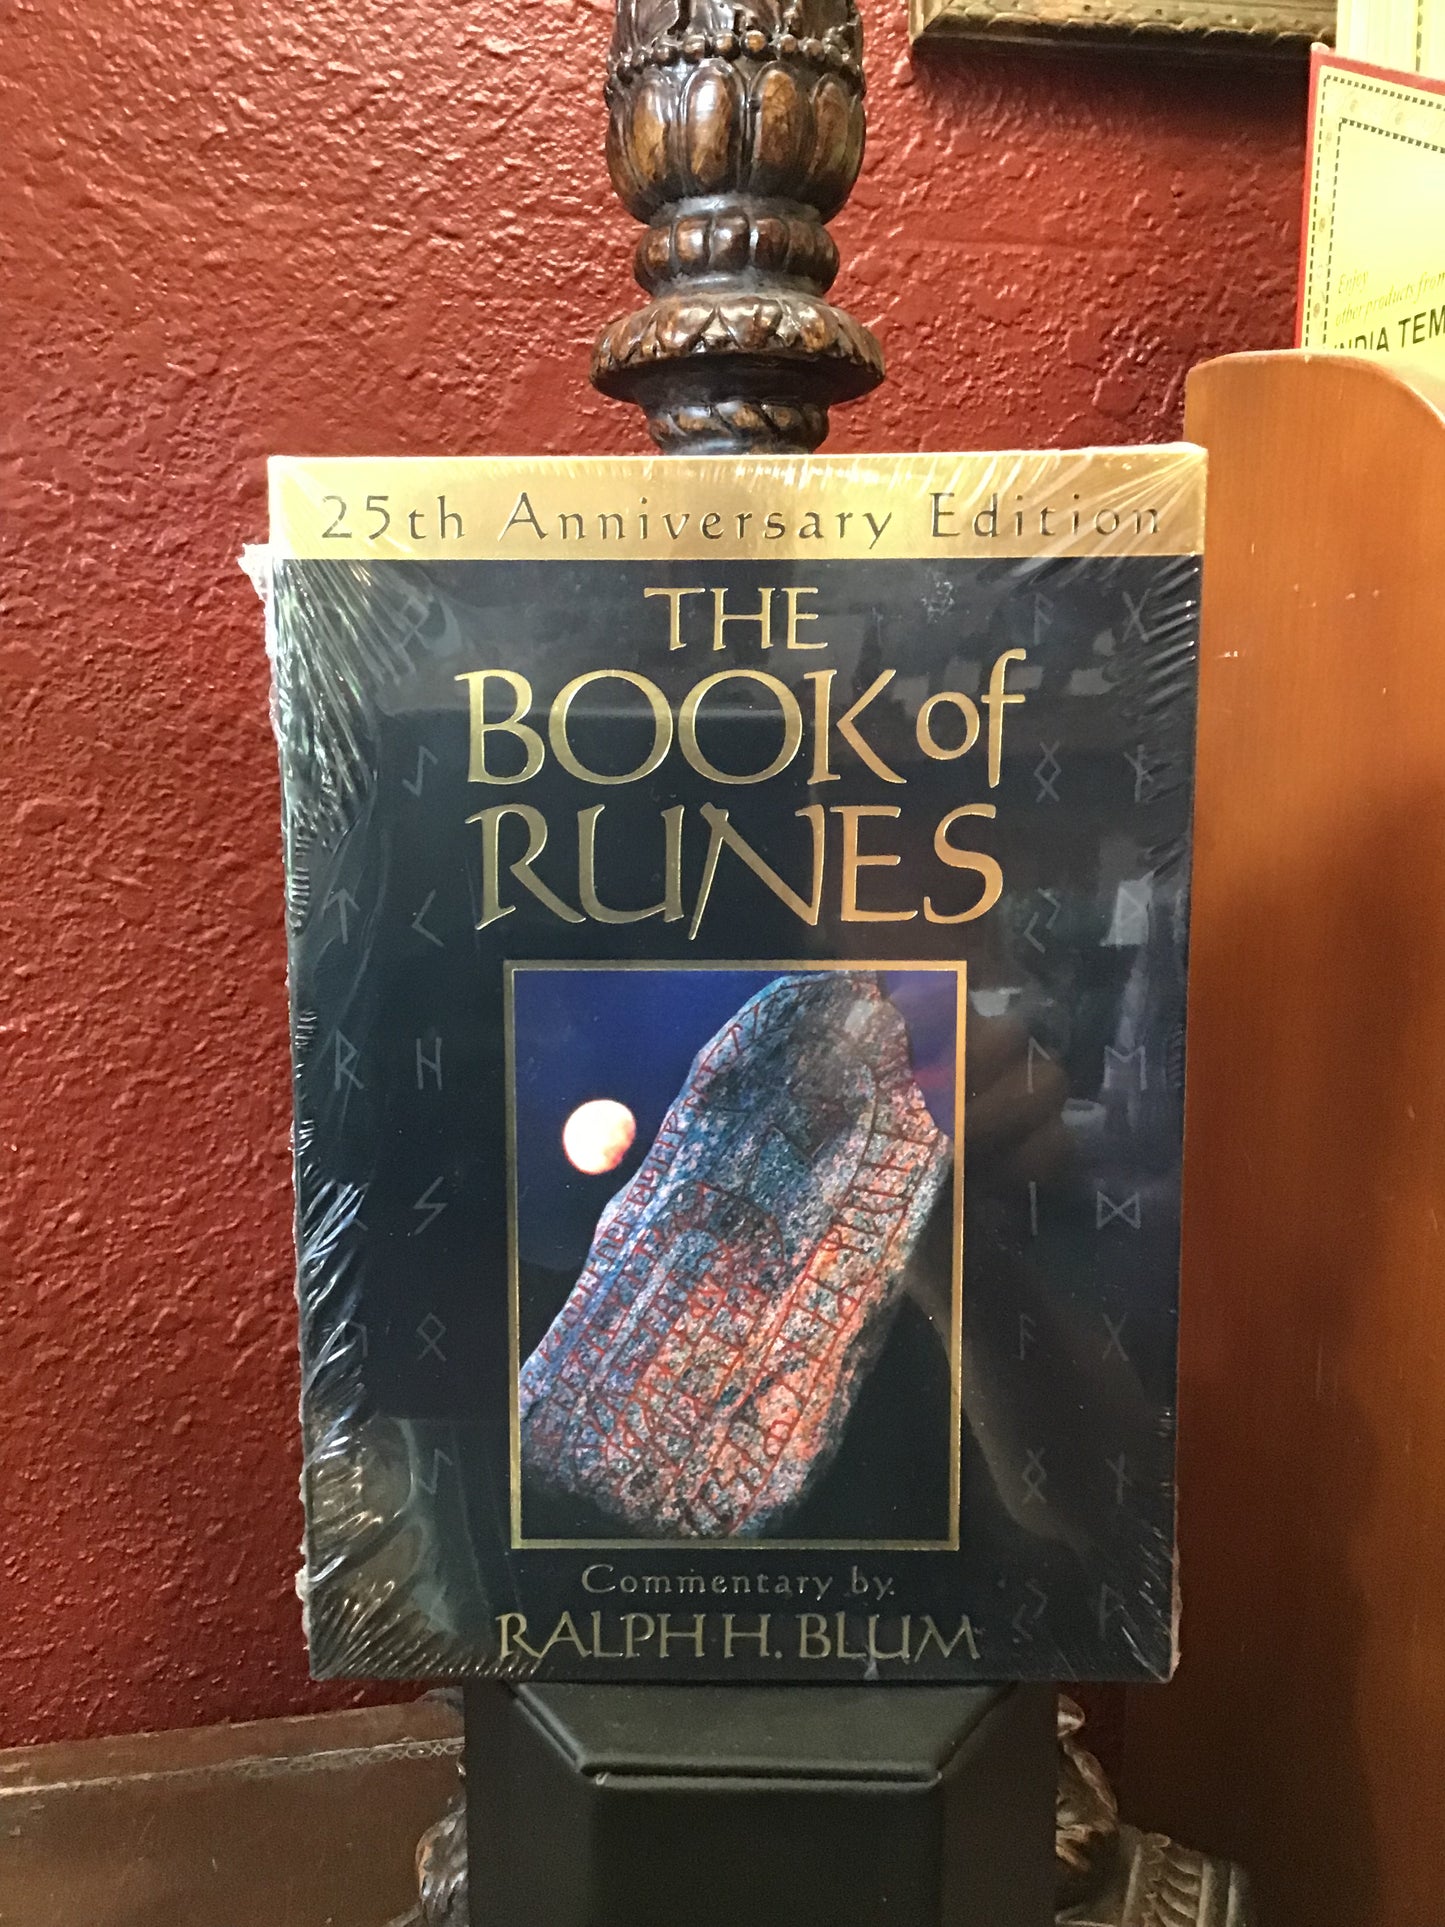 Book of Runes